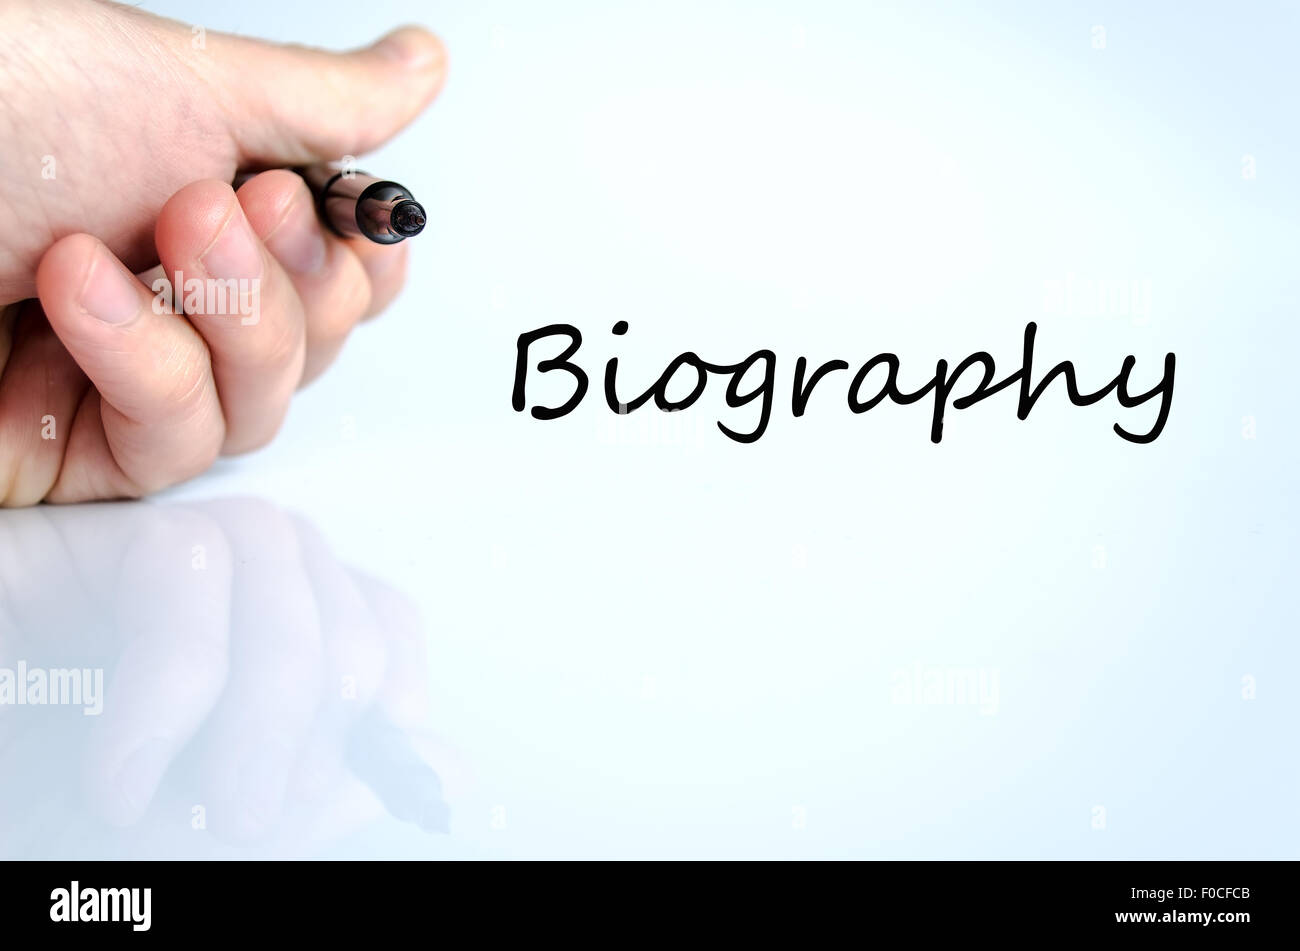 Biographie concept texte isolé sur fond blanc Banque D'Images